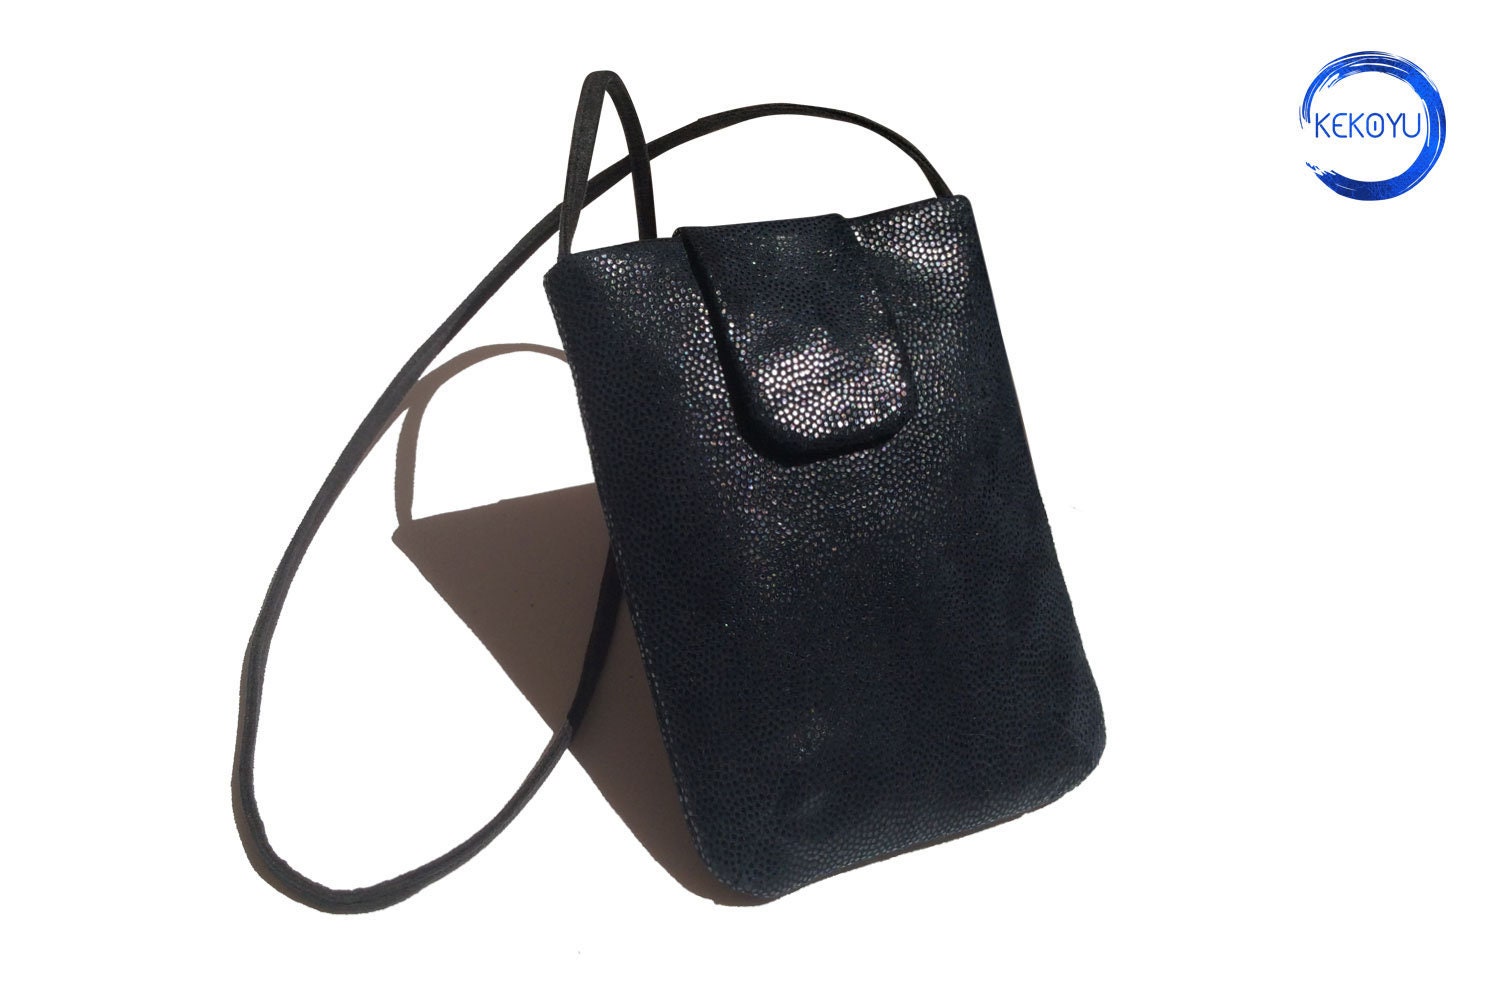 I-pad Bag Black Leather Cross Body I-pad Bag Shoulder Bag 